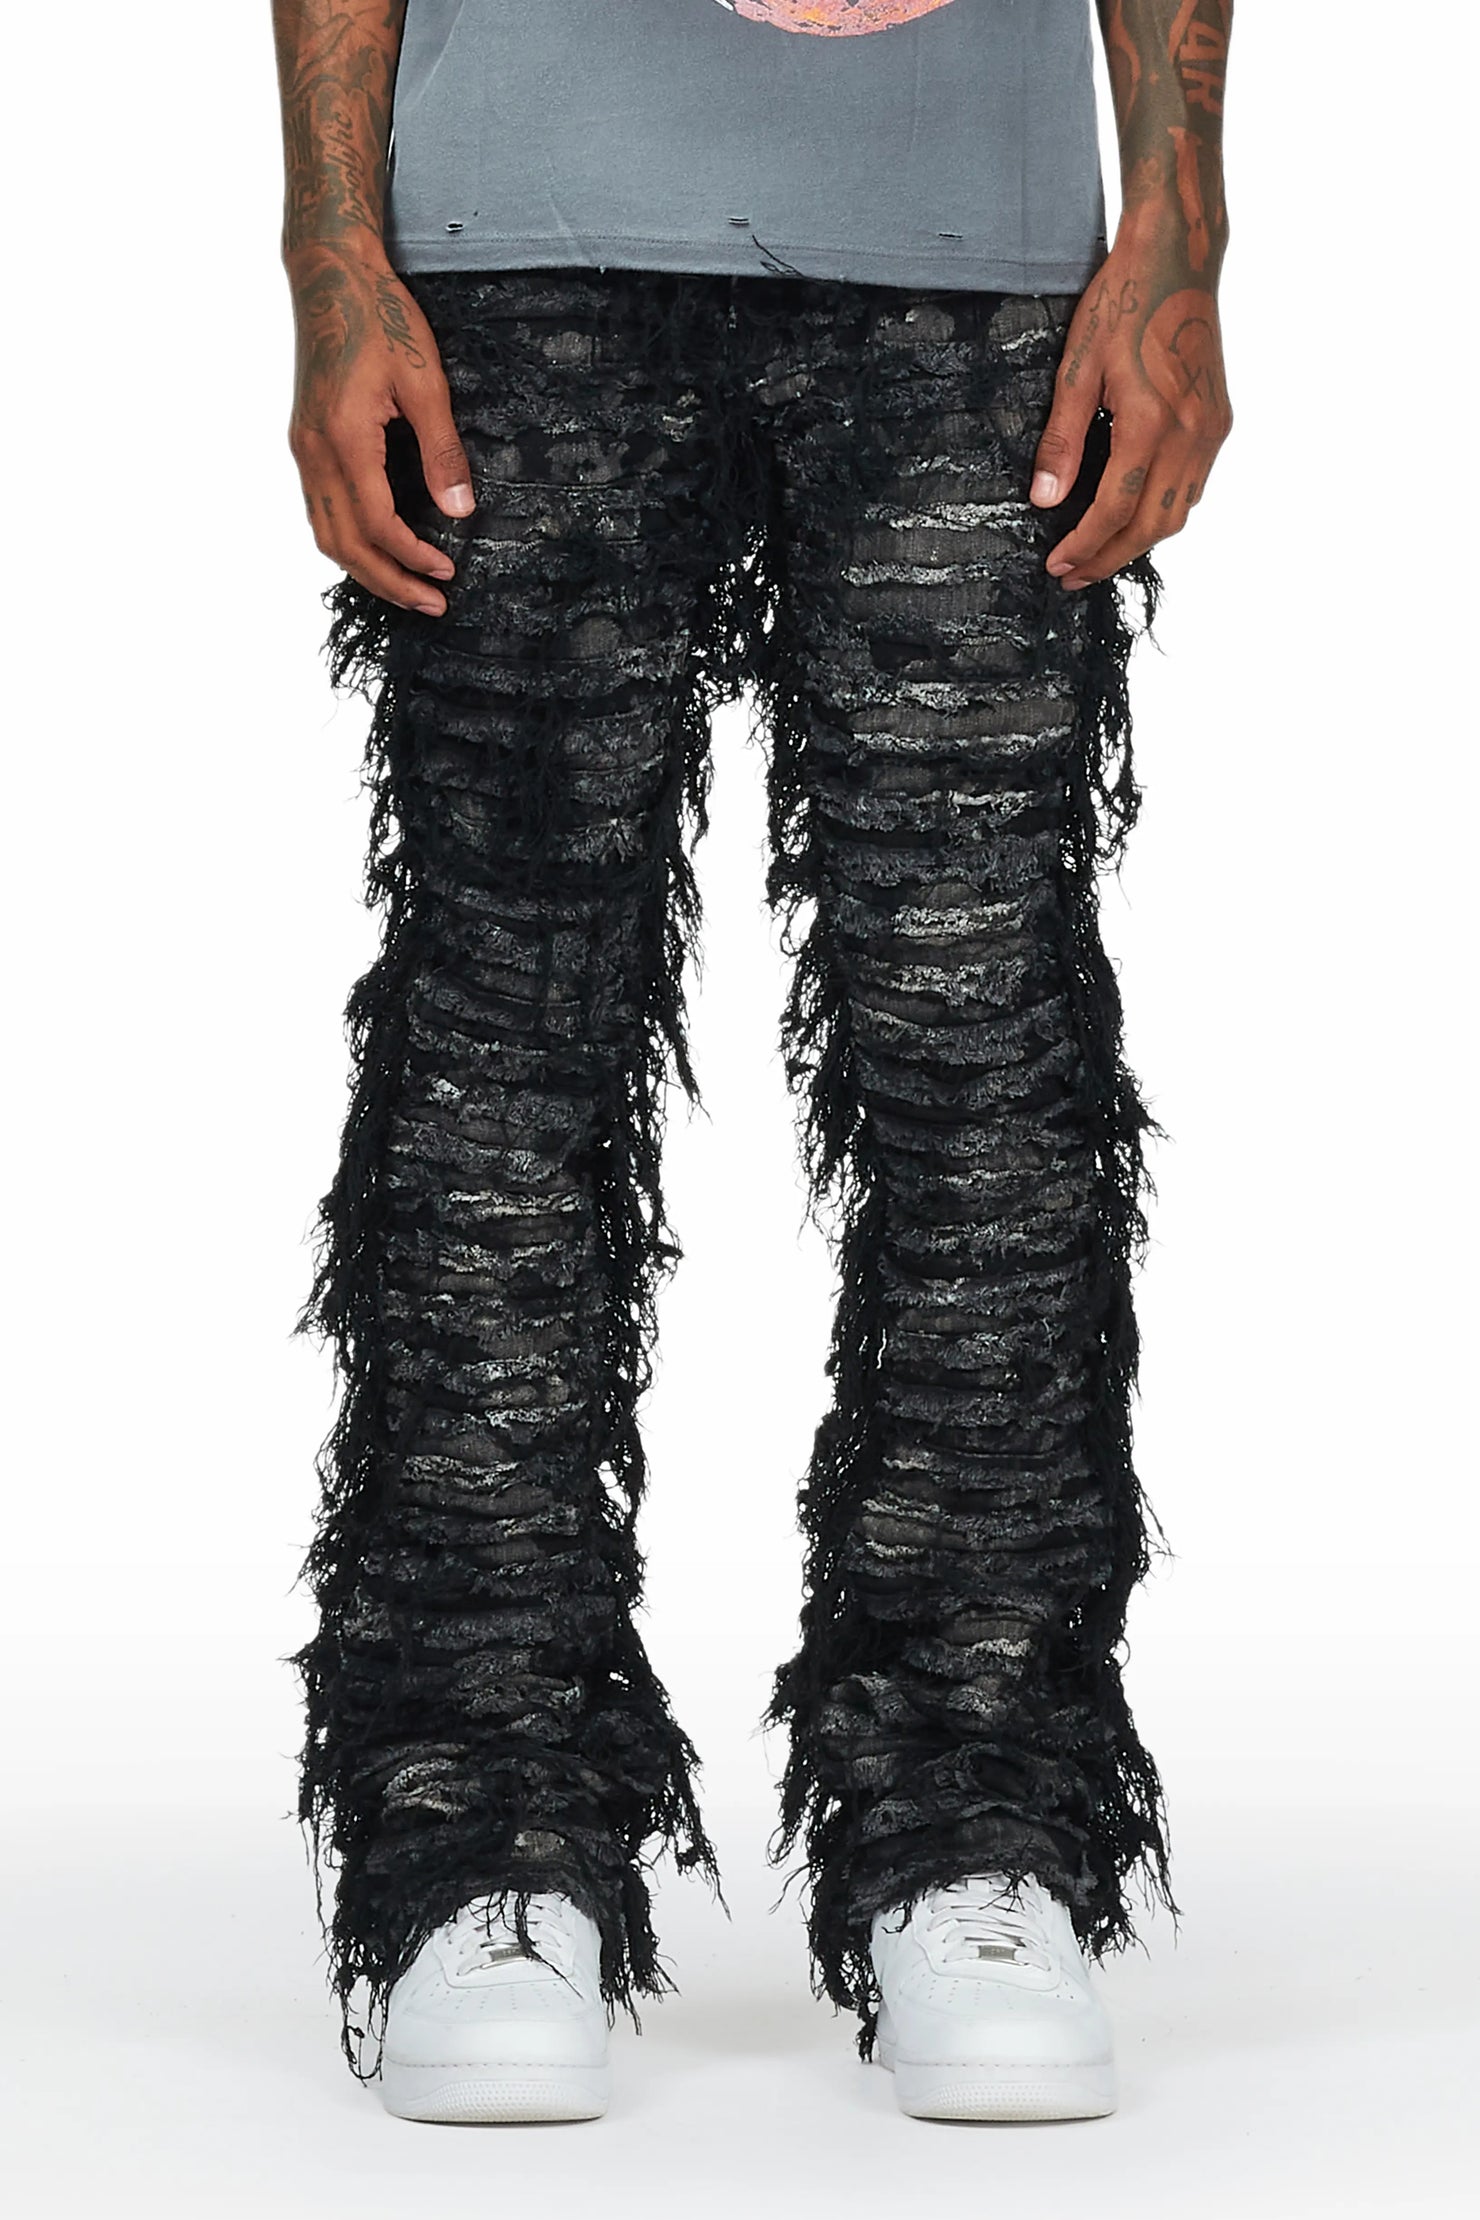 Bossko Black Stacked Flare Jean